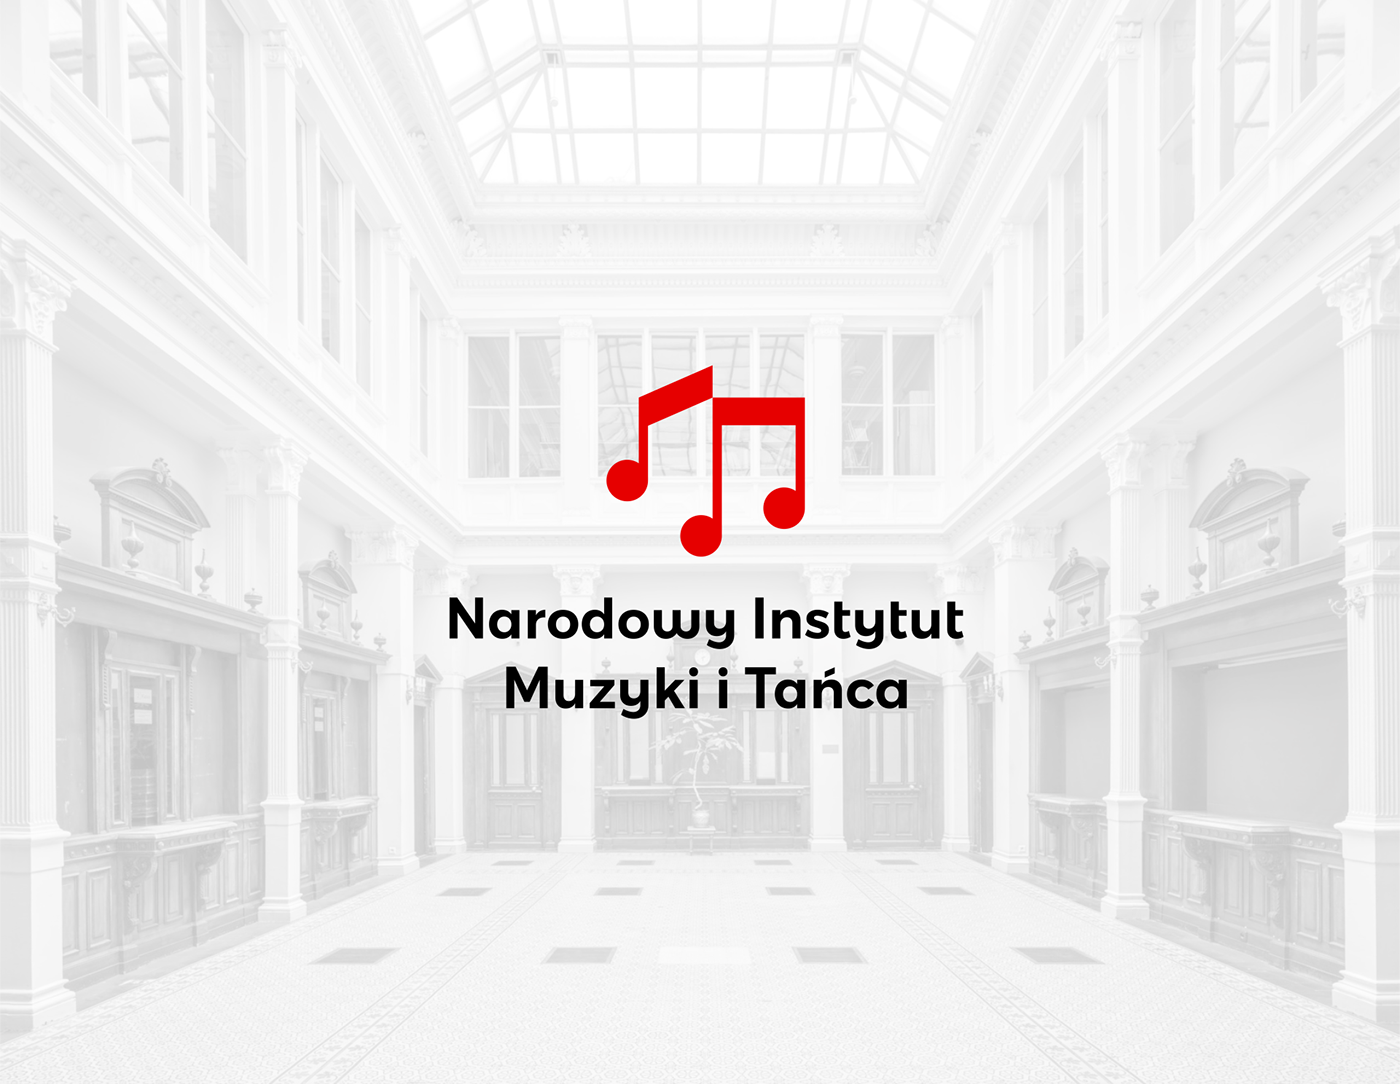 identyfikacja instytut logo muzyka narodowy nimit plakat taniec